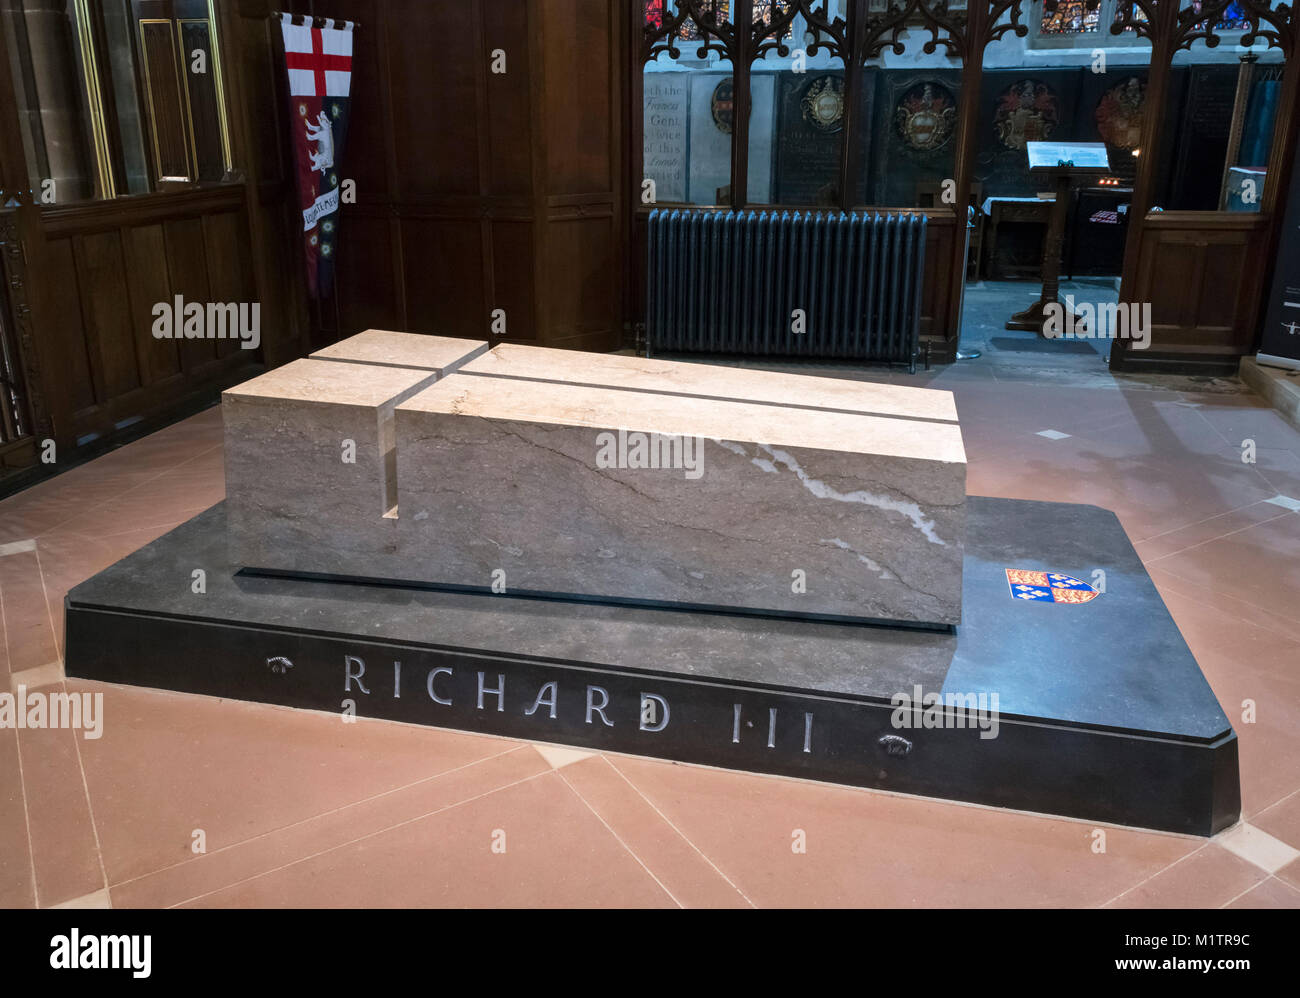 La tomba del re Richard III nella cattedrale di Leicester, Leicester, Inghilterra, Regno Unito. Richard III i resti sono stati reinterred qui in marzo 2015. Foto Stock